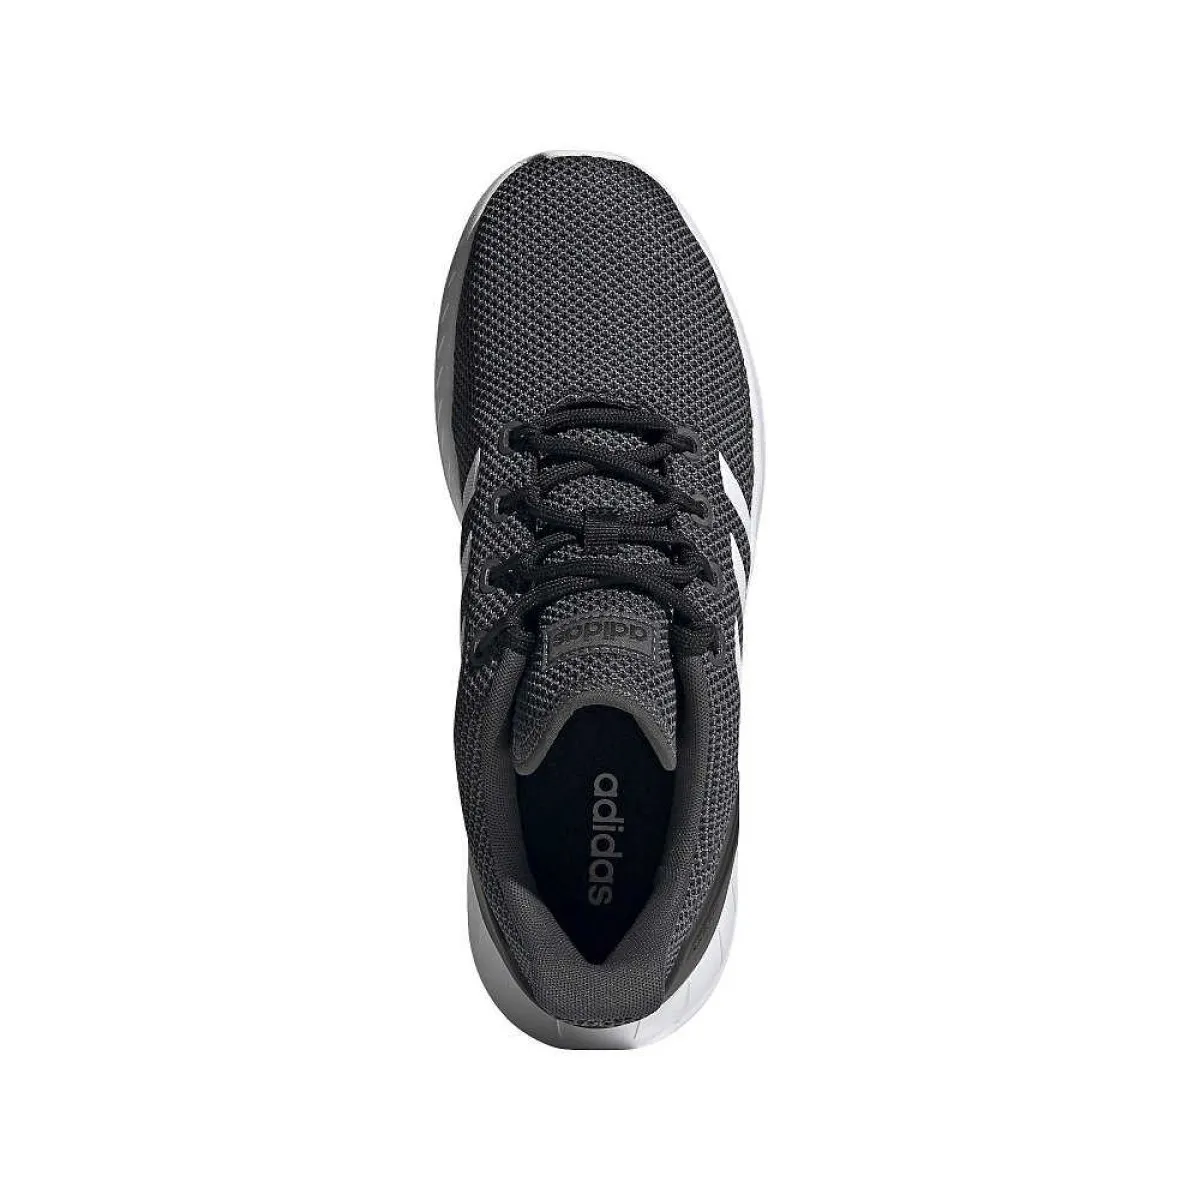 Chaussures de sport adidas Questar Flow noires avec bandes blanches